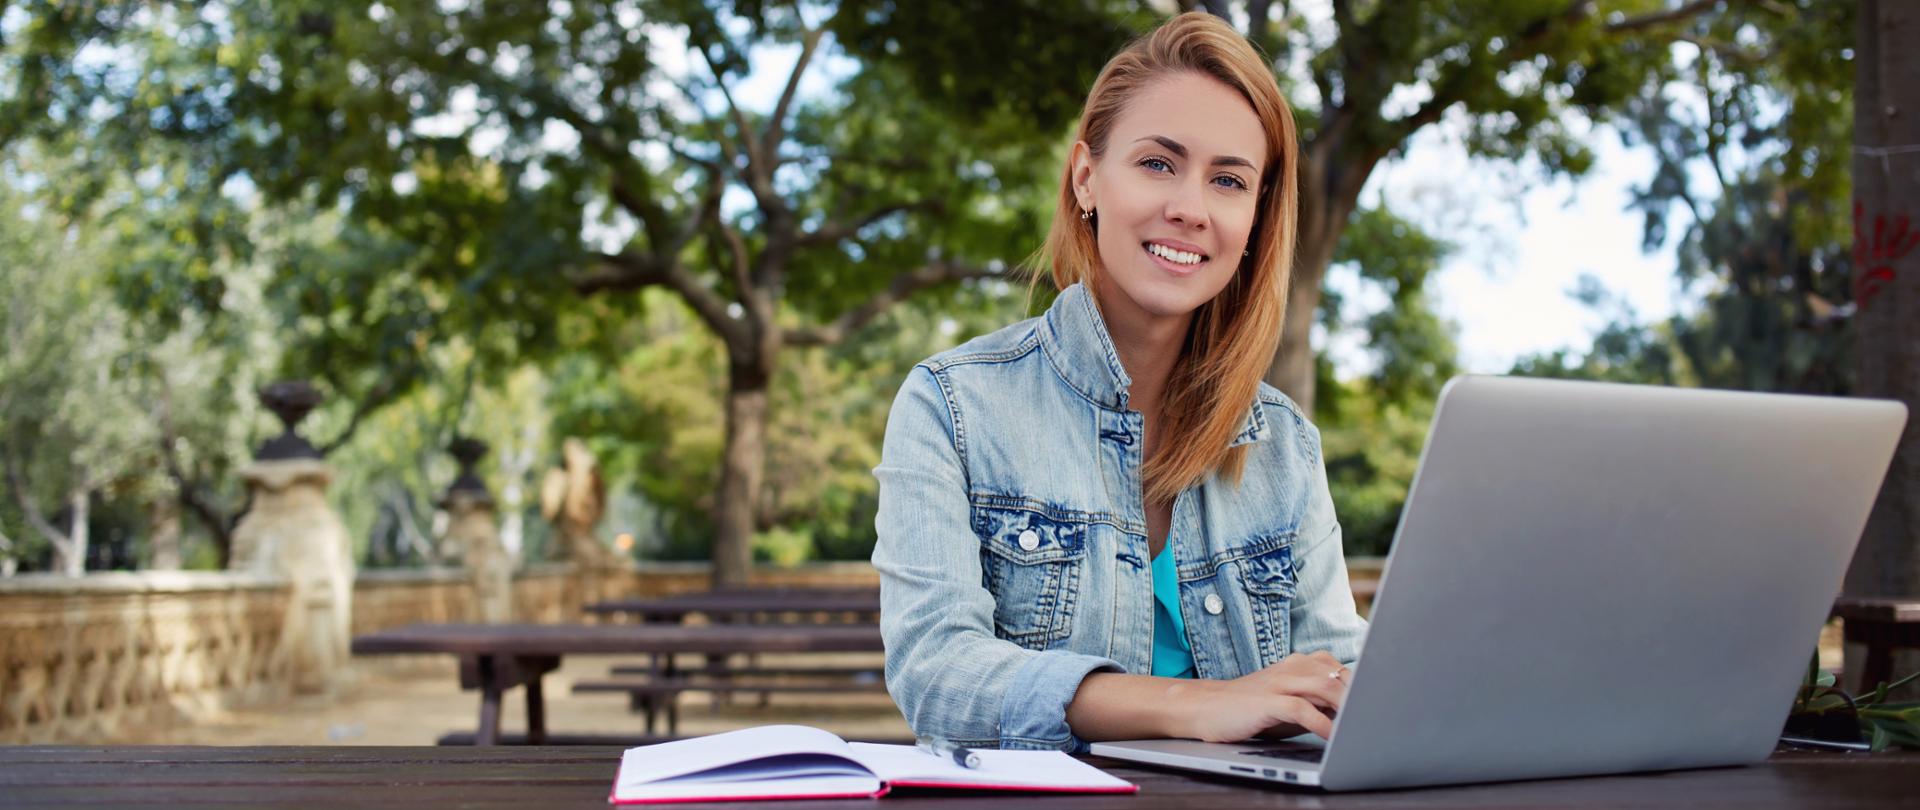 Uśmiechnięta dziewczyna siedzi z laptopem w parku